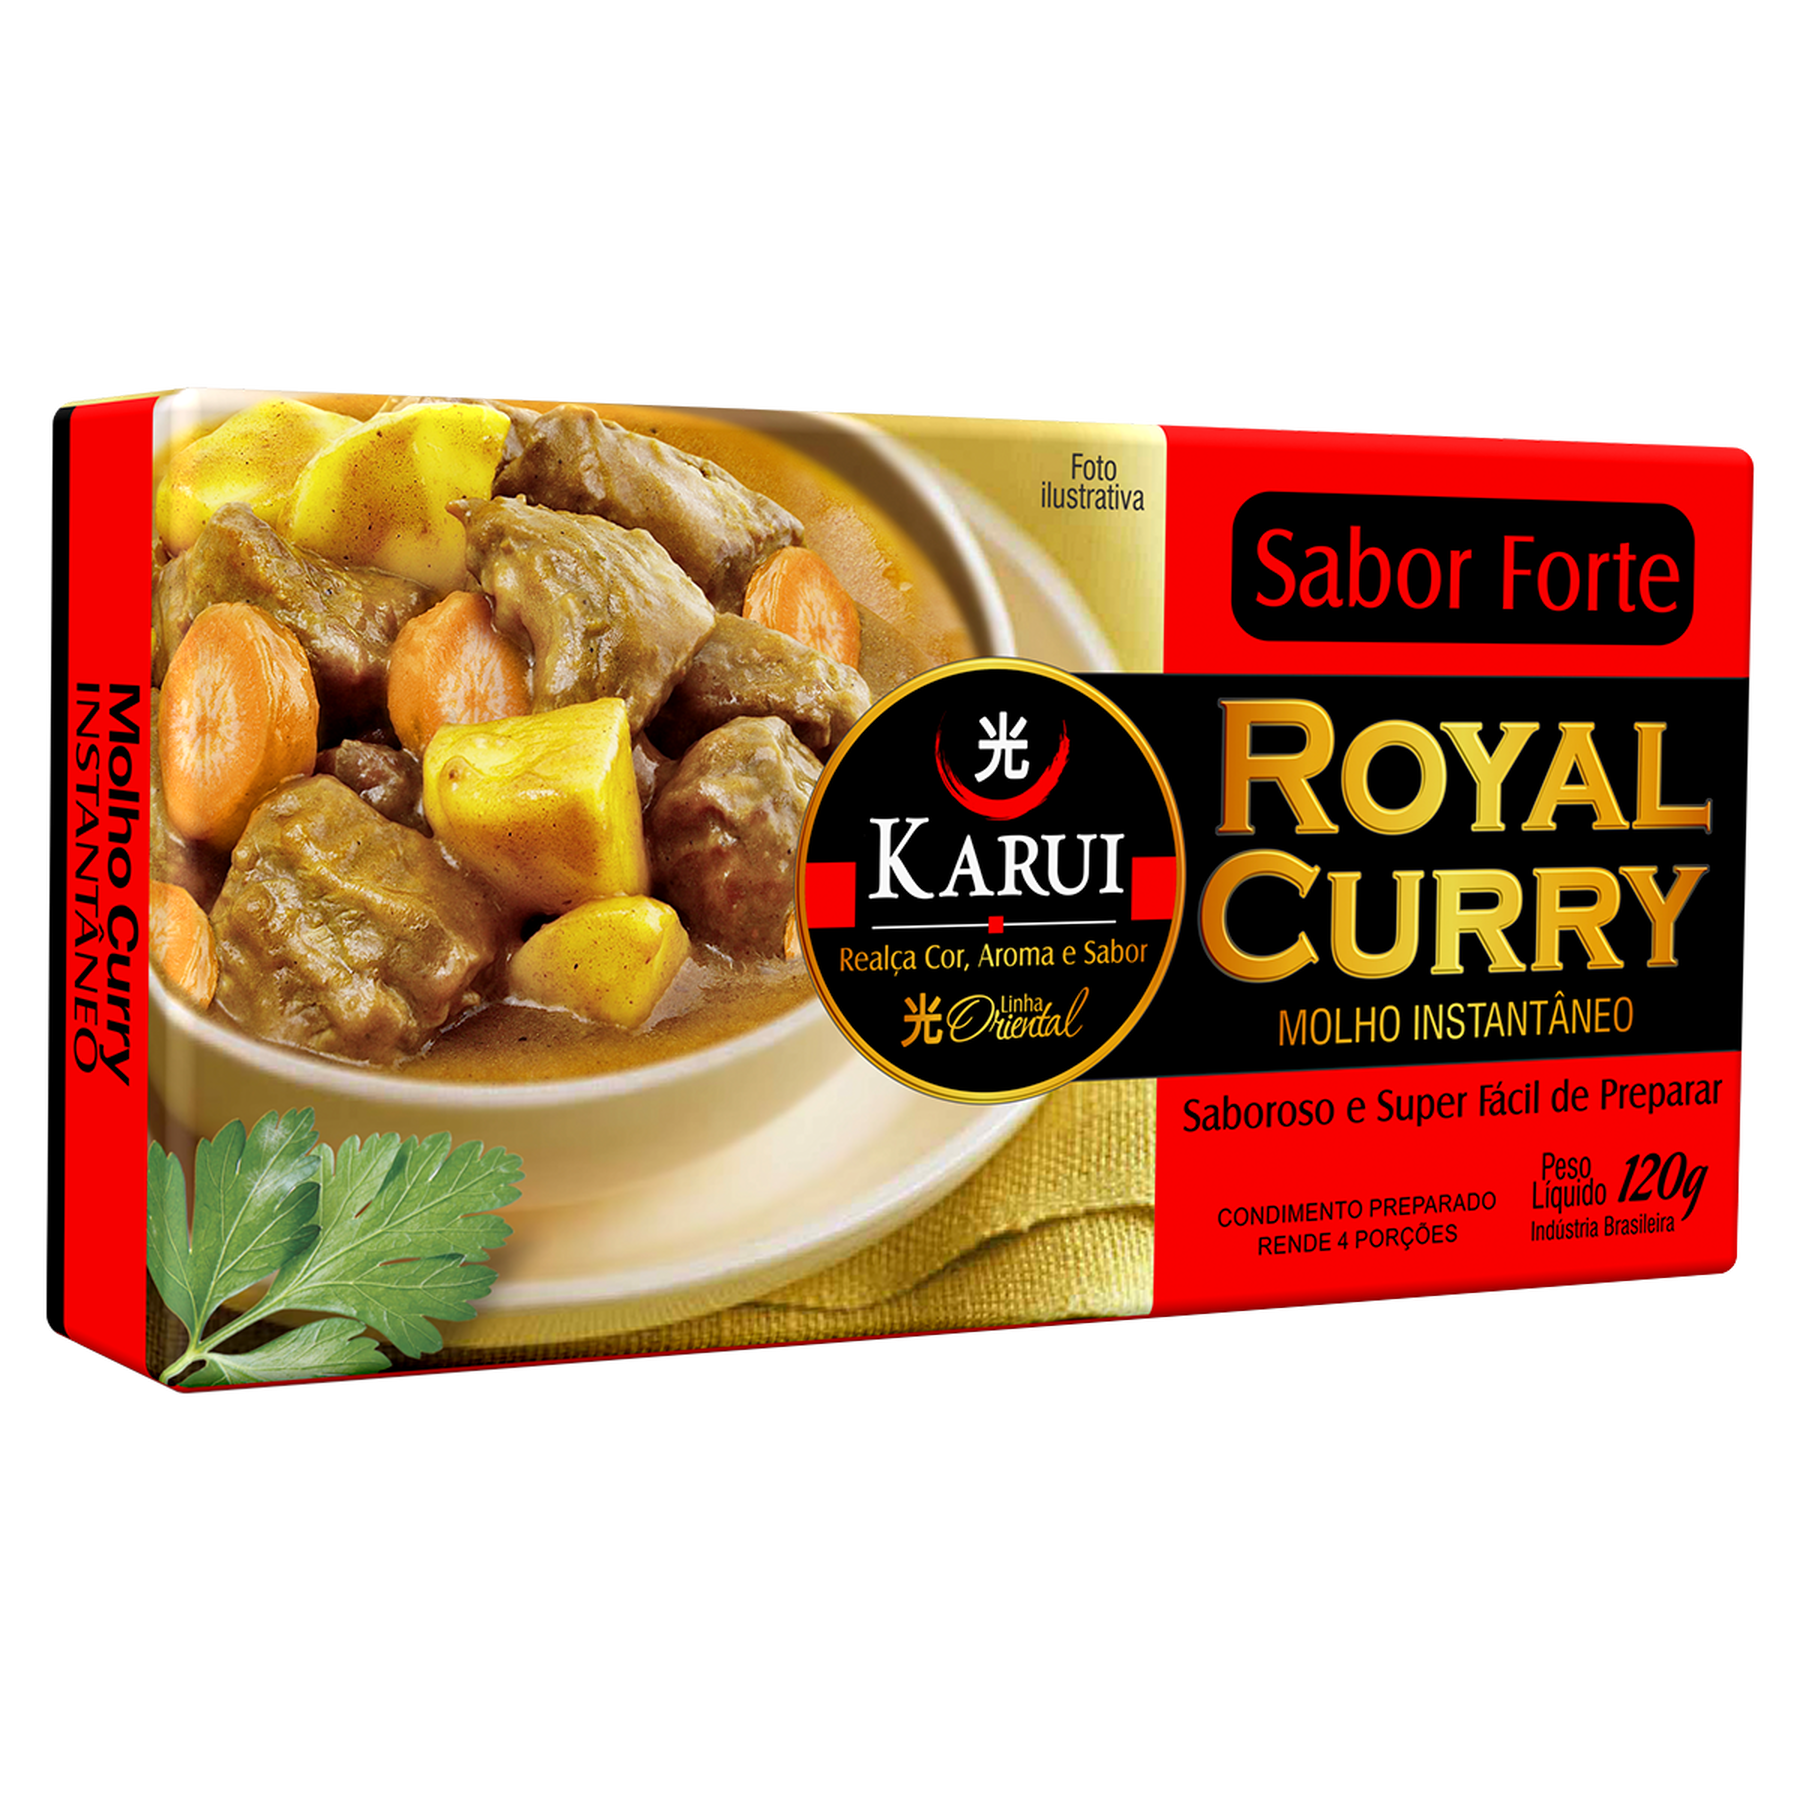 Caldo Royal Curry Forte Karui 120g